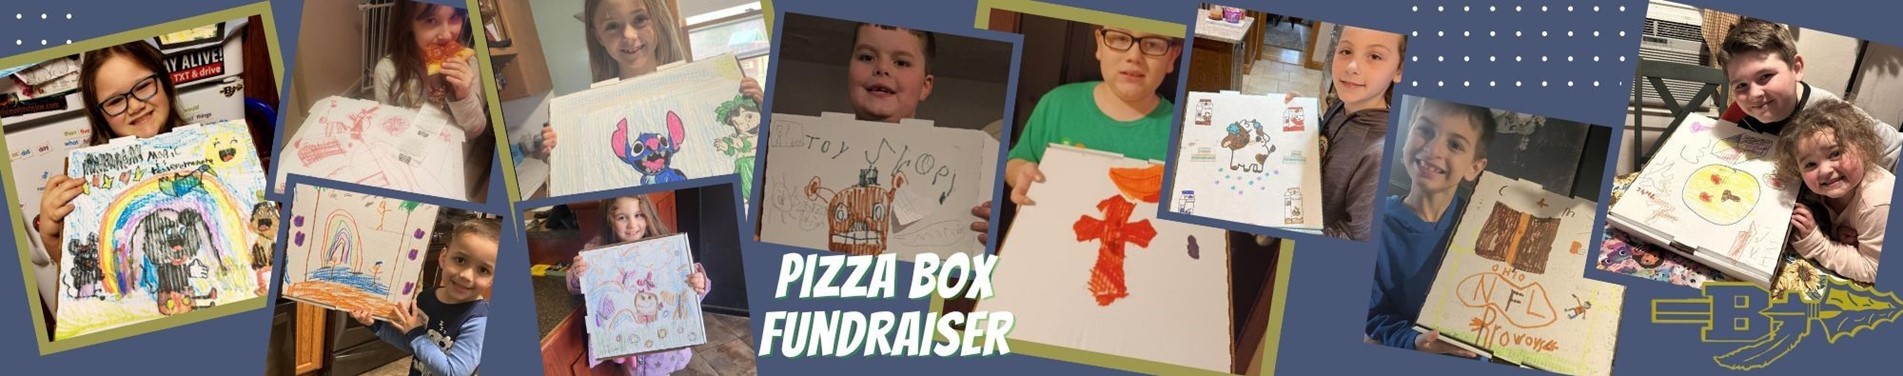 Pizza box fundraiser